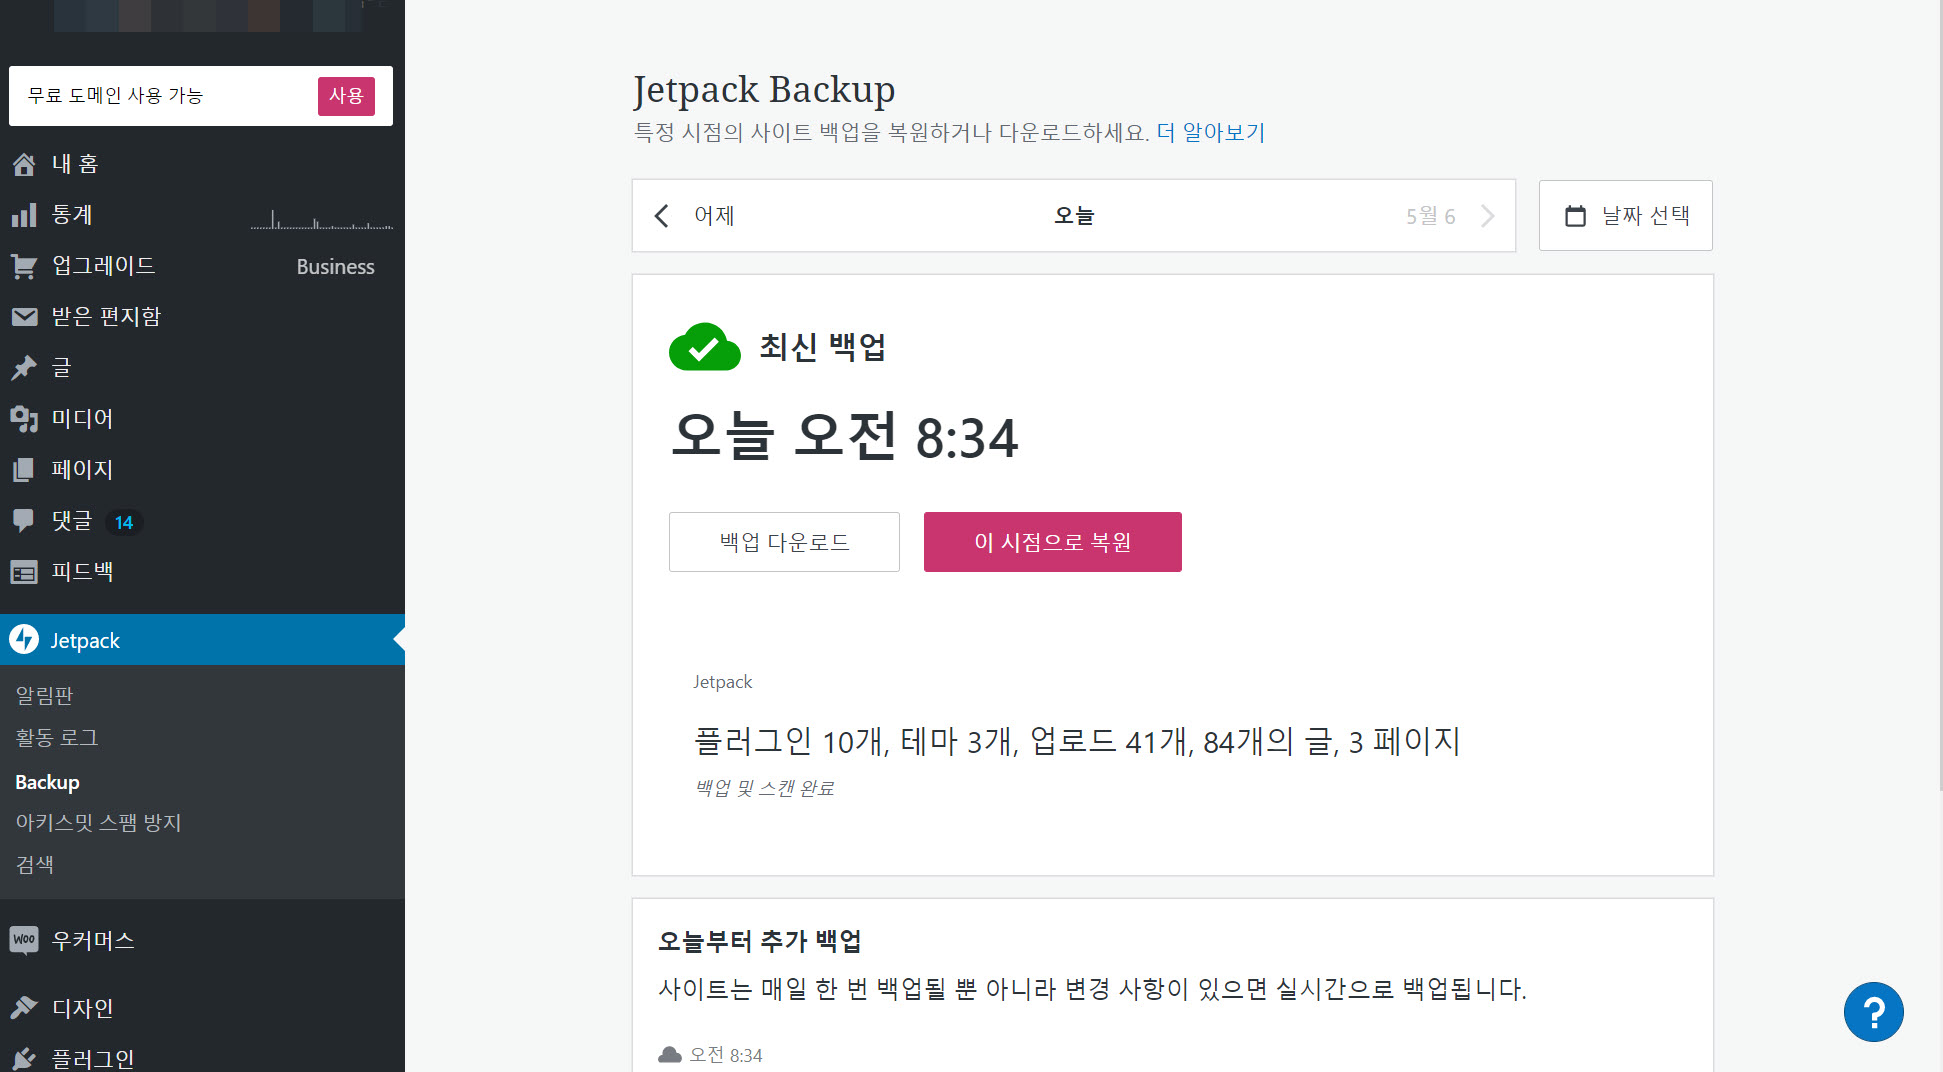 워드프레스닷컴 Jetpack 백업 기능으로 백업/복원하기